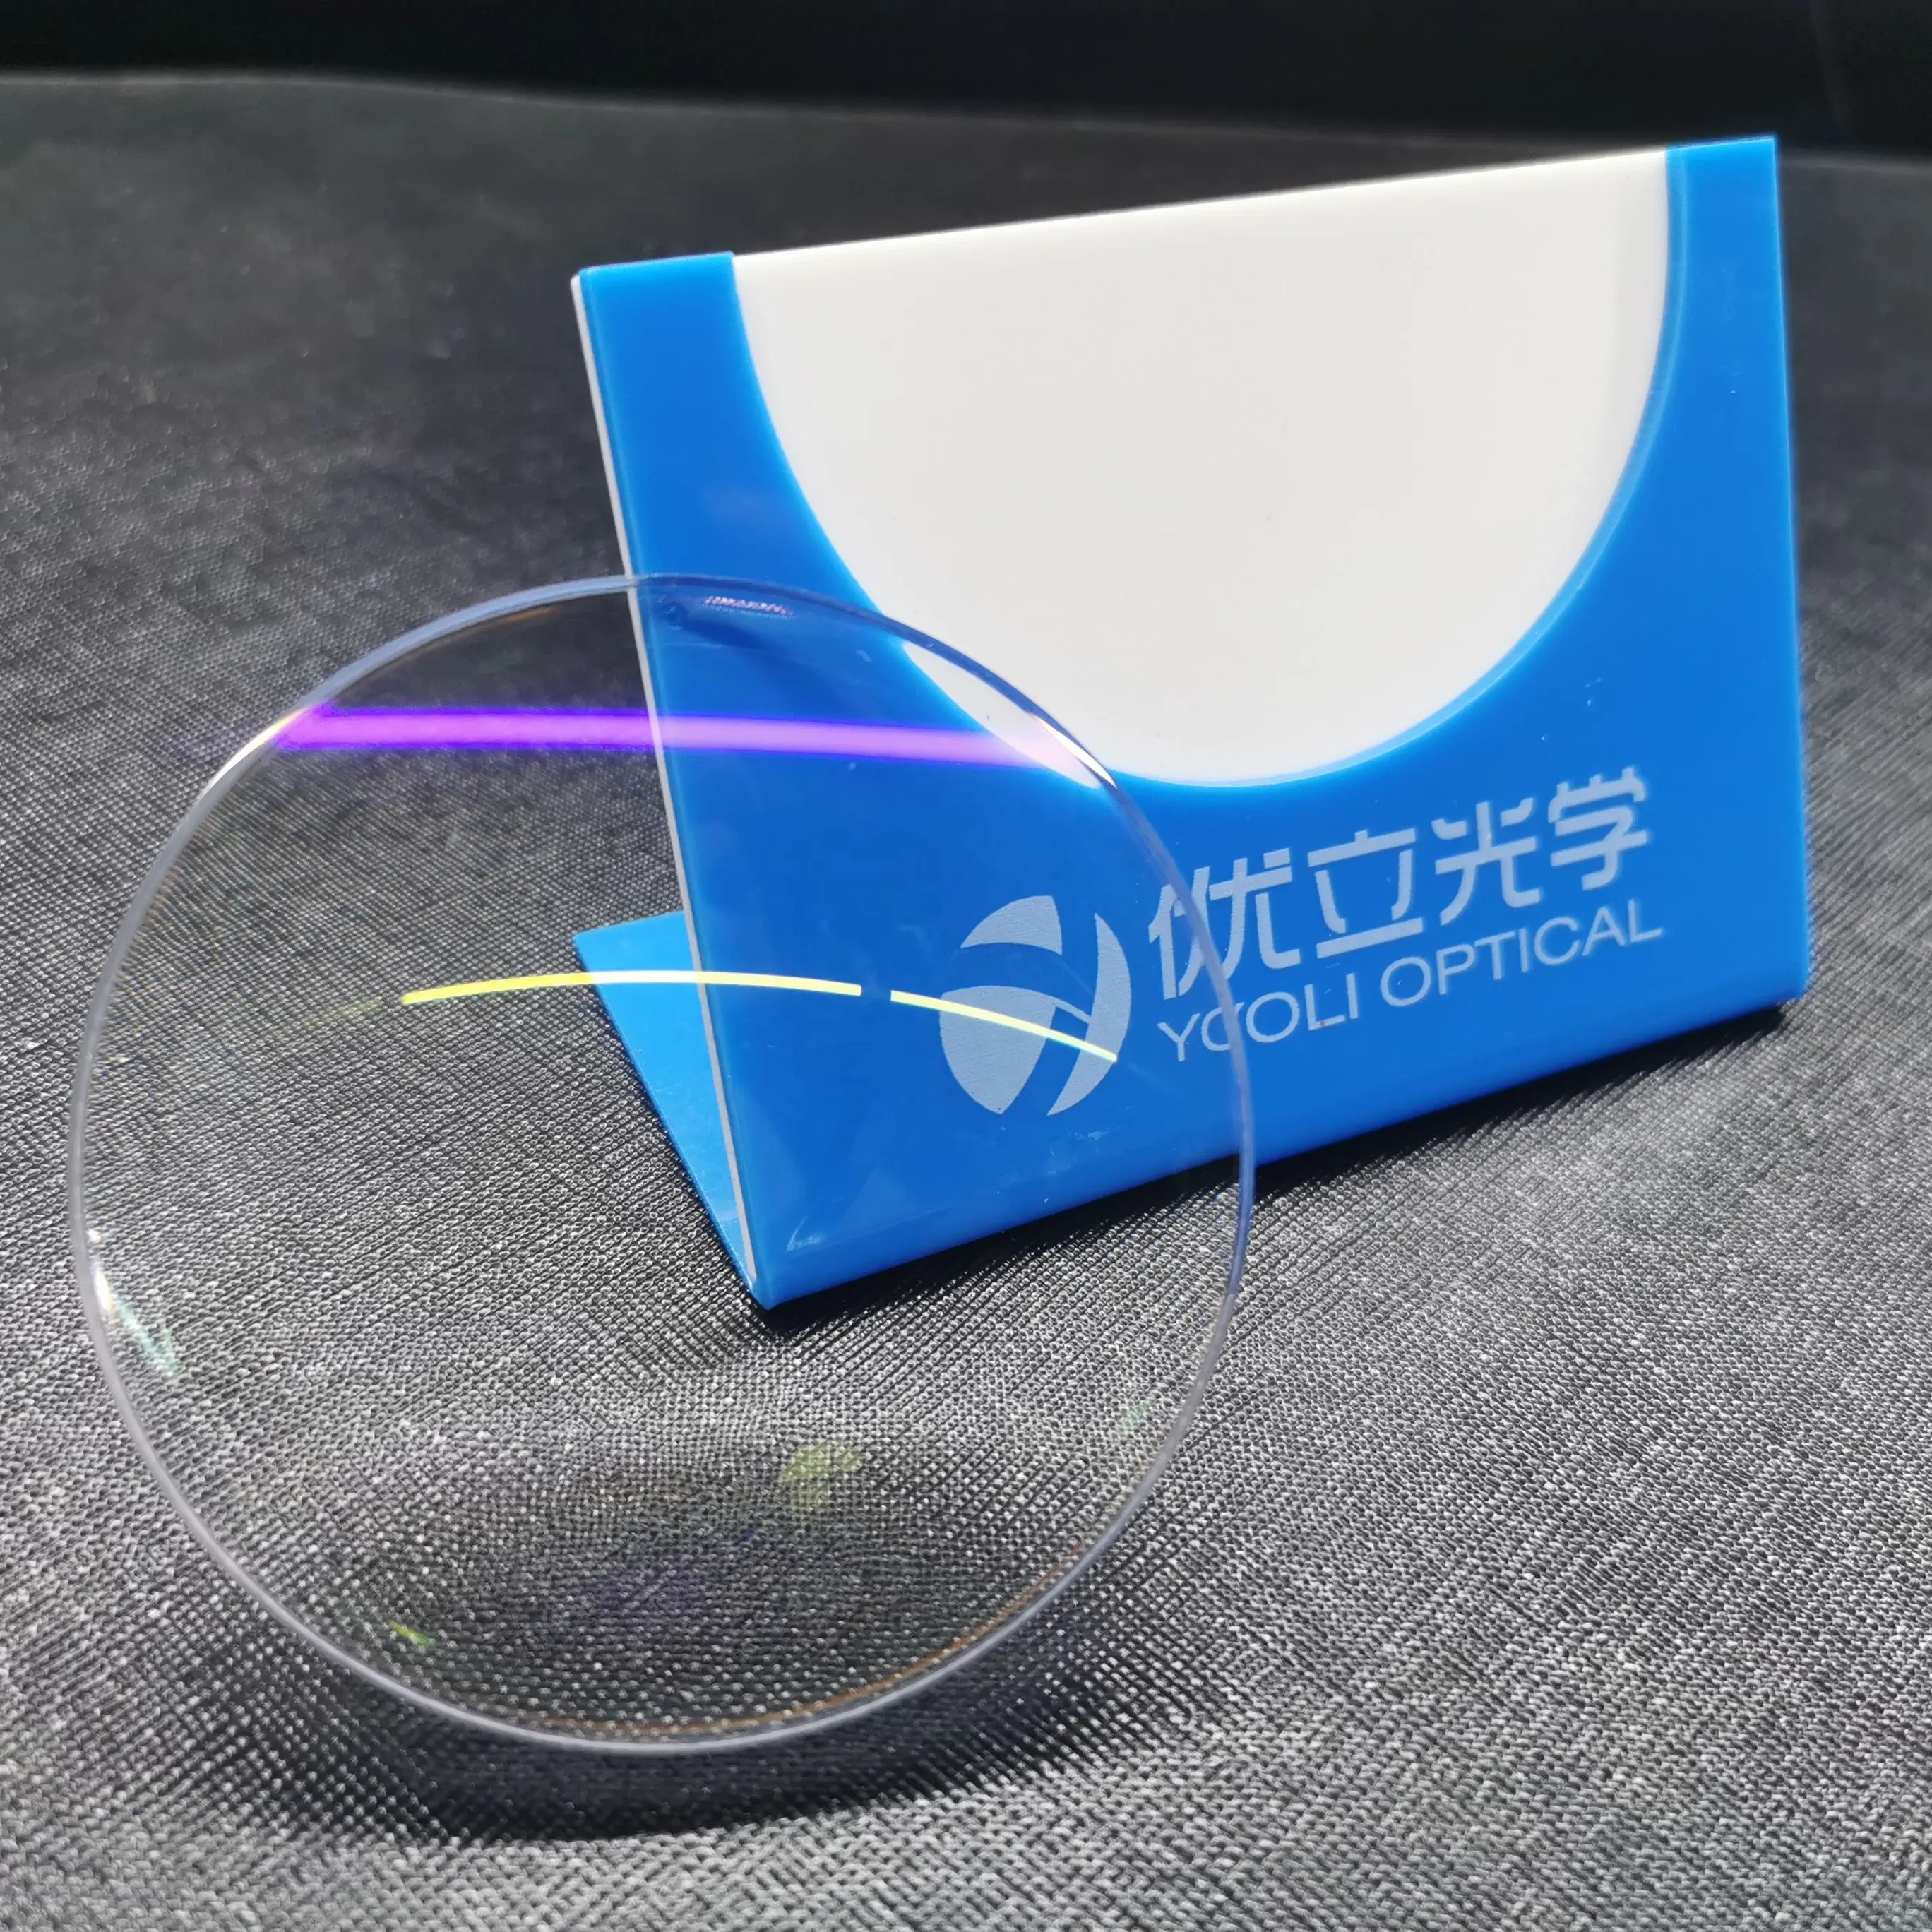 Danyang fábrica 1.56 uv420 corte azul asp shmc lente óptica com revestimento azul claro e amarelo verde